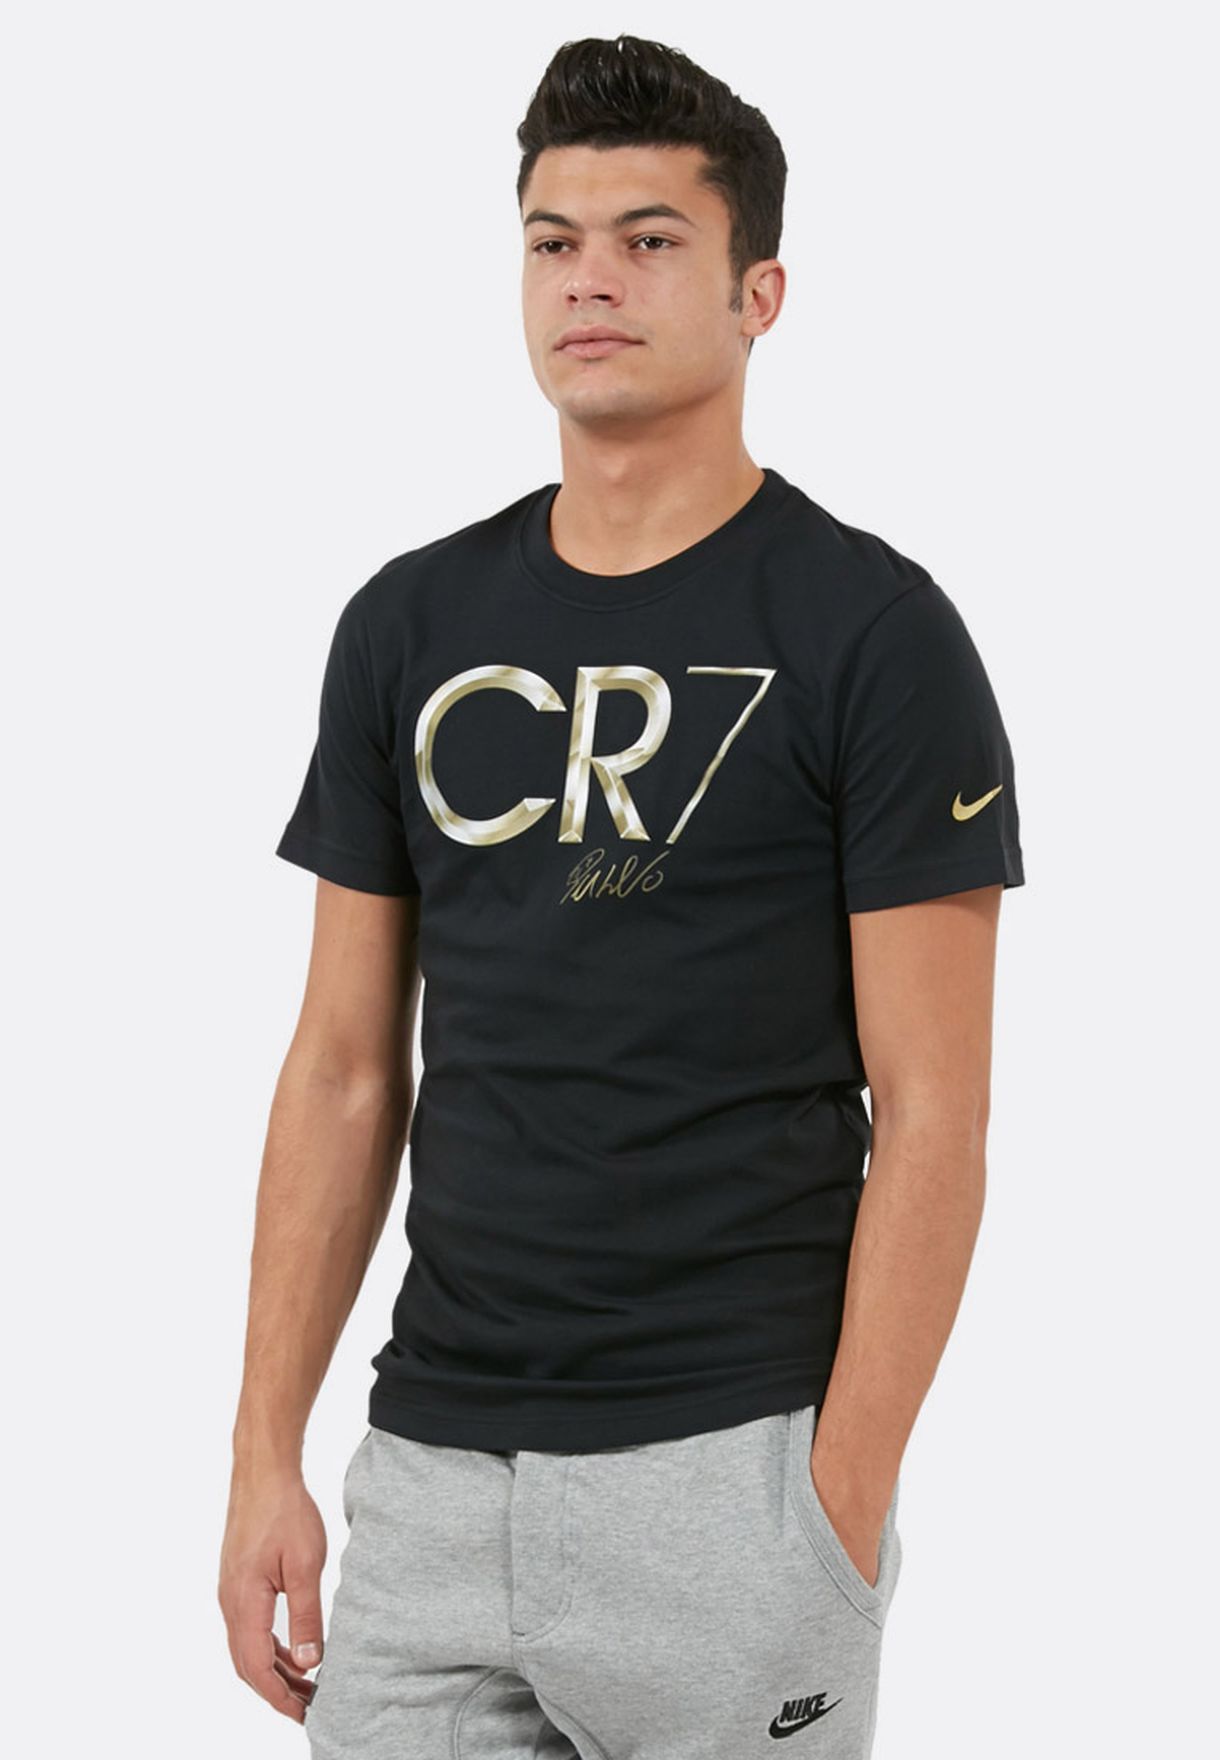 nike cr7 t shirt